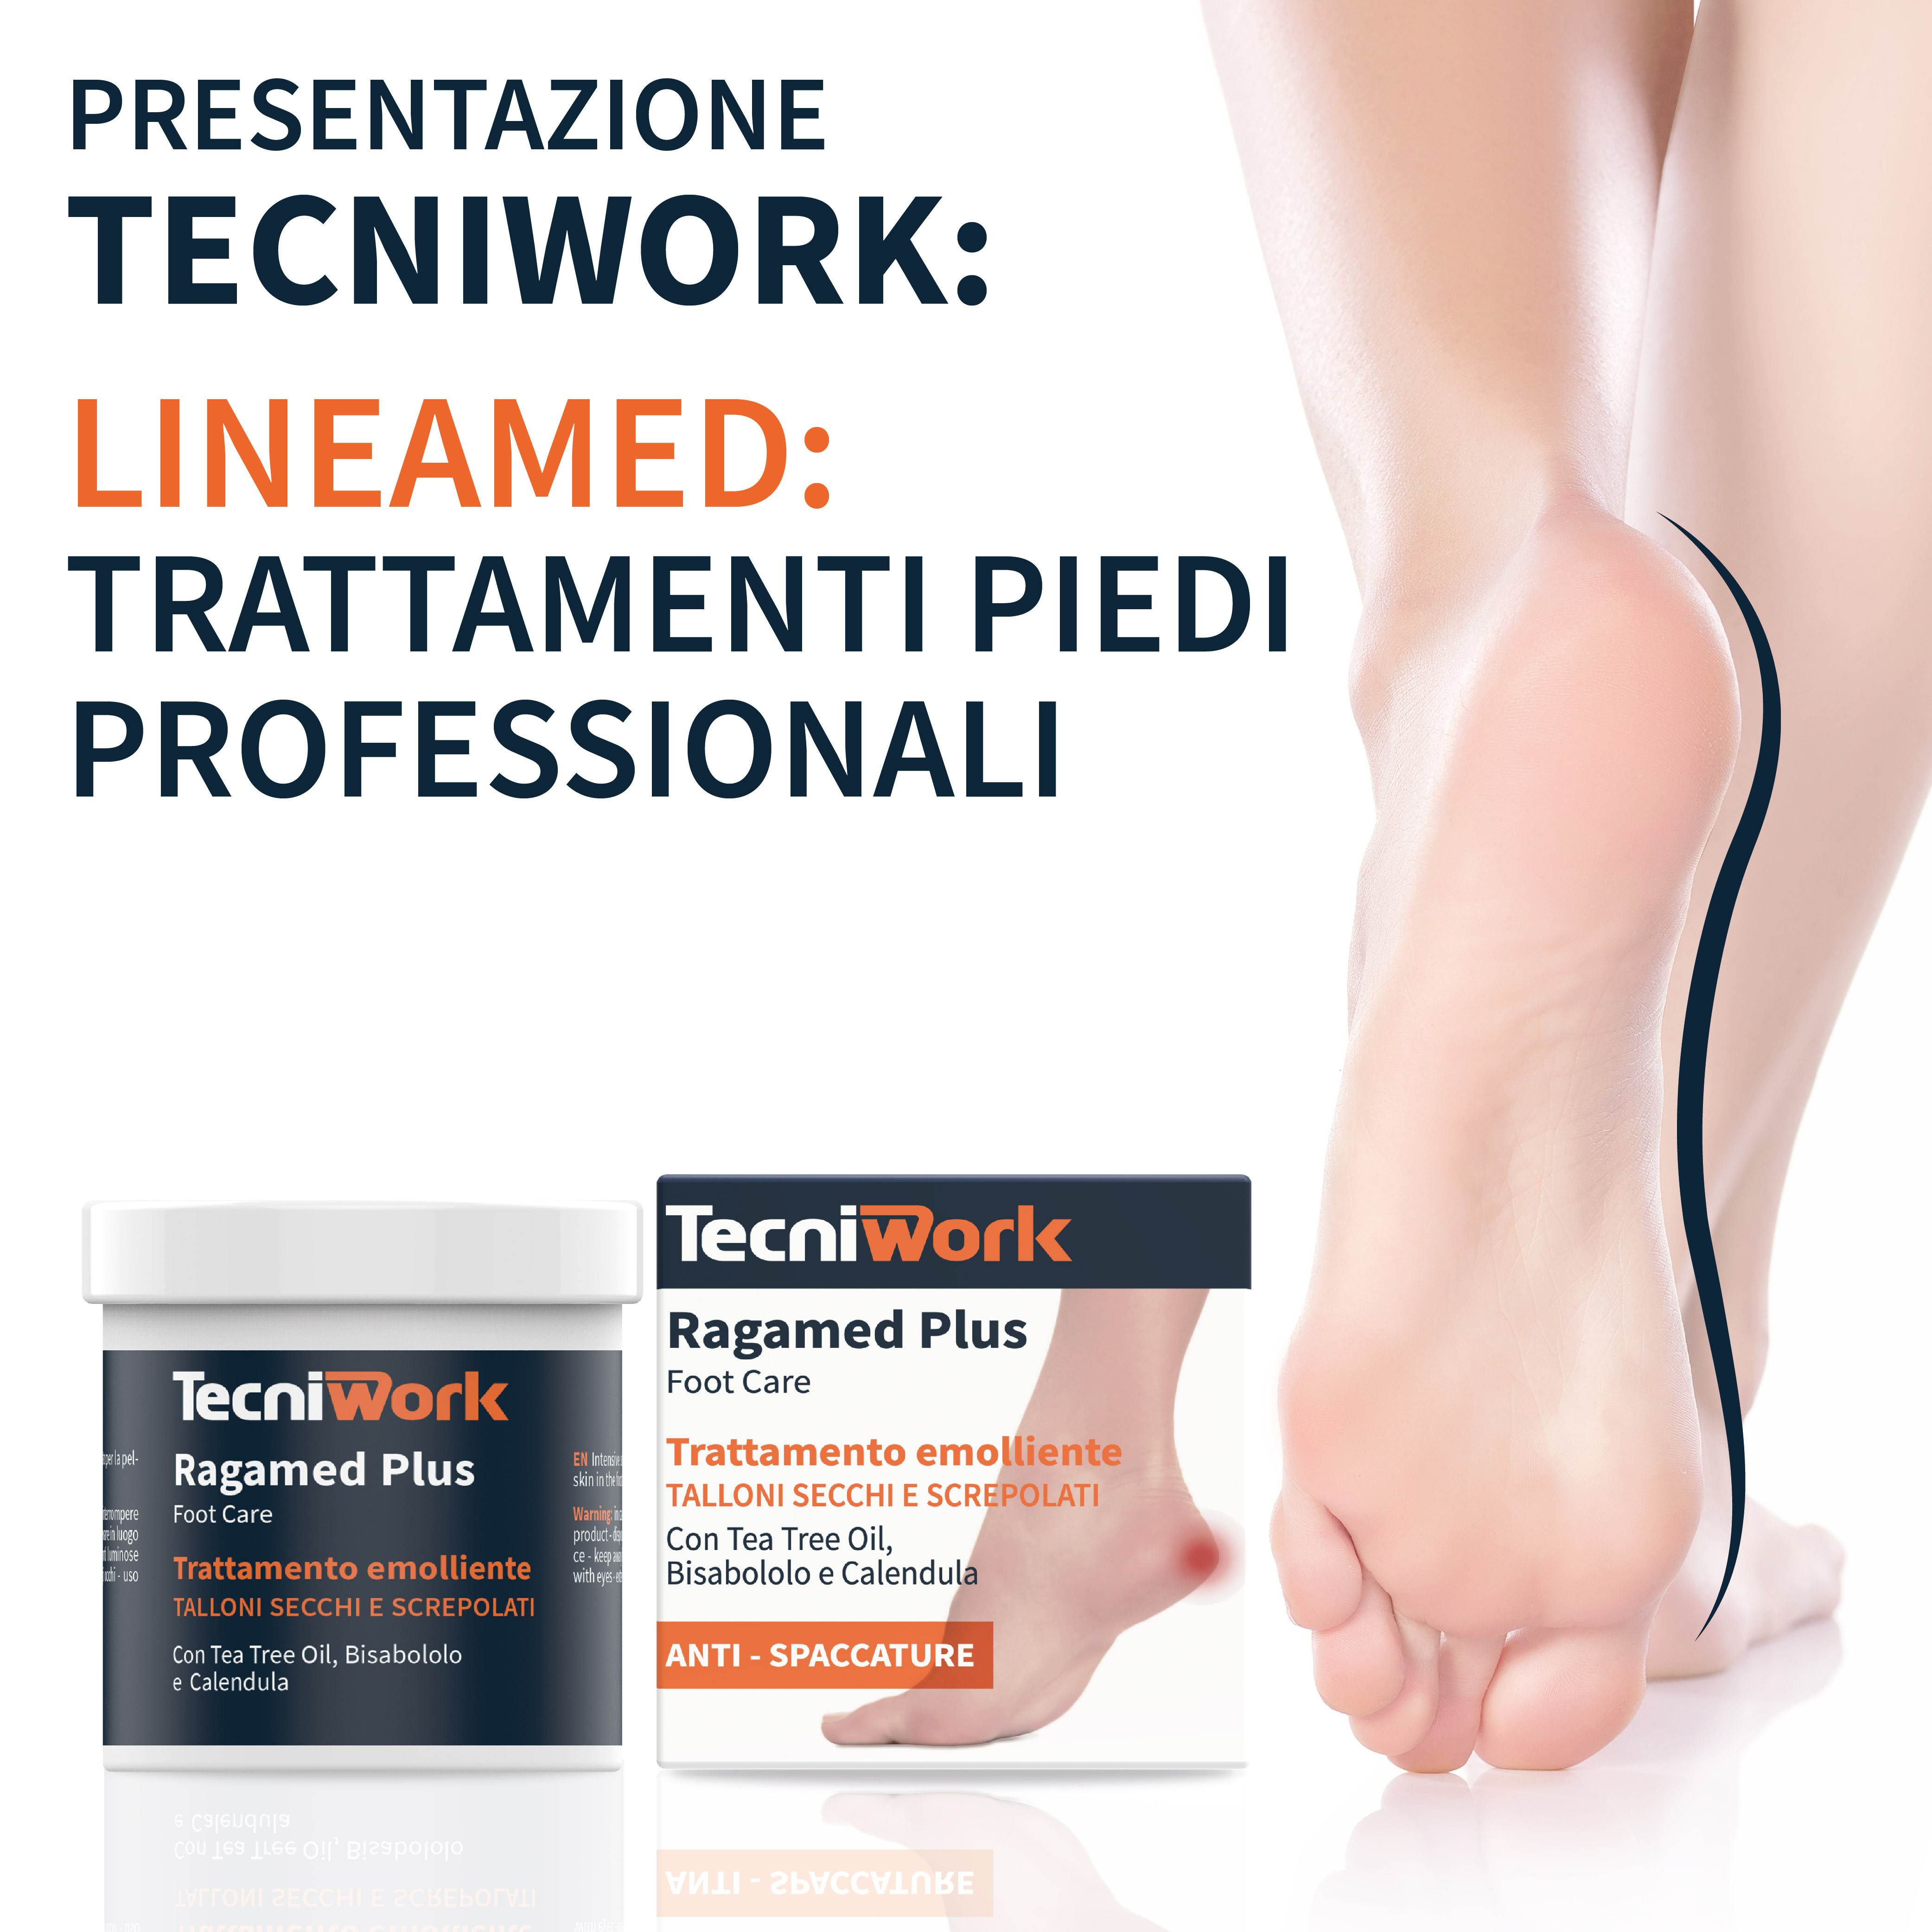 Presentazione Tecniwork: Lineamed trattamenti piedi professionali